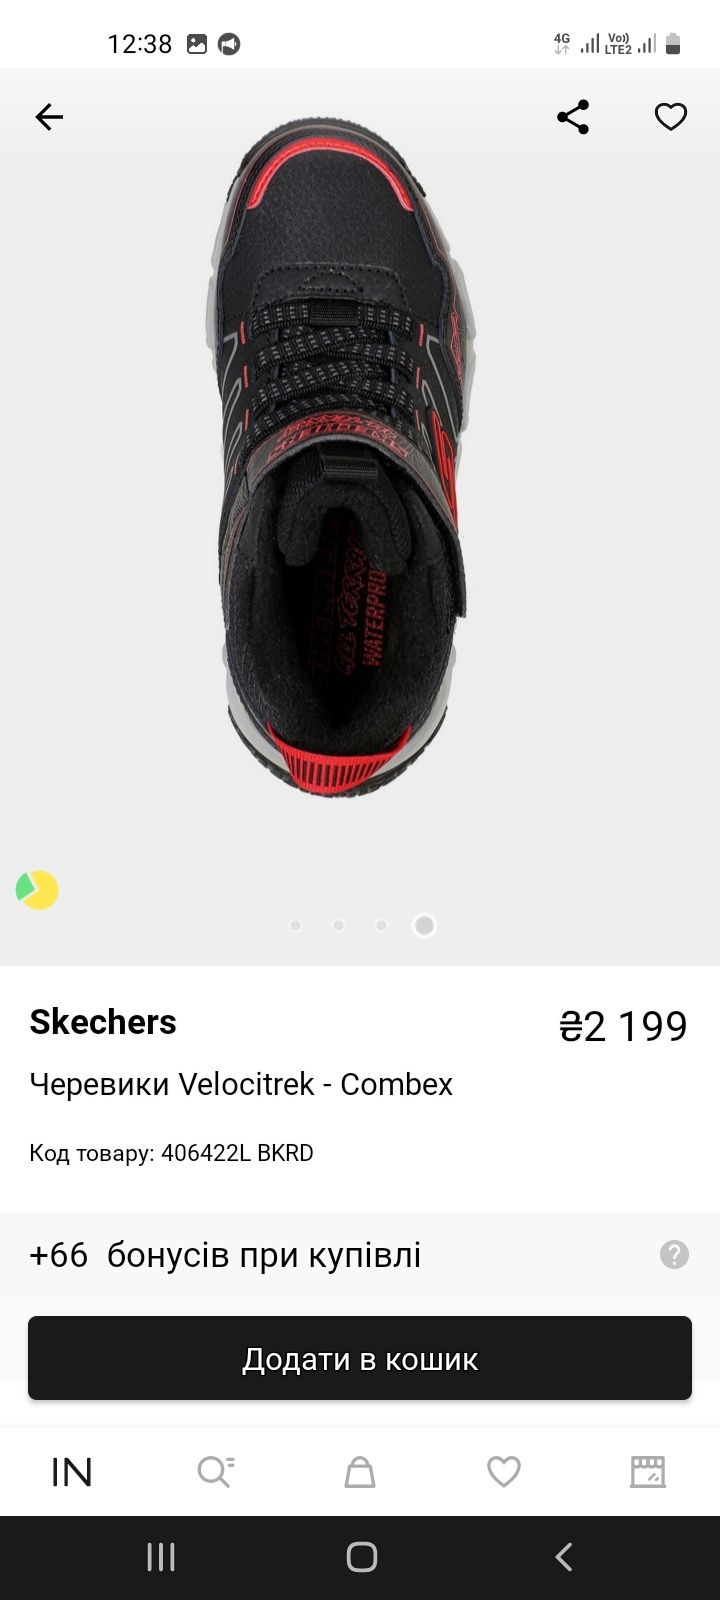 Продам черевики VELOCITREK-COMBEX 37р. б/у